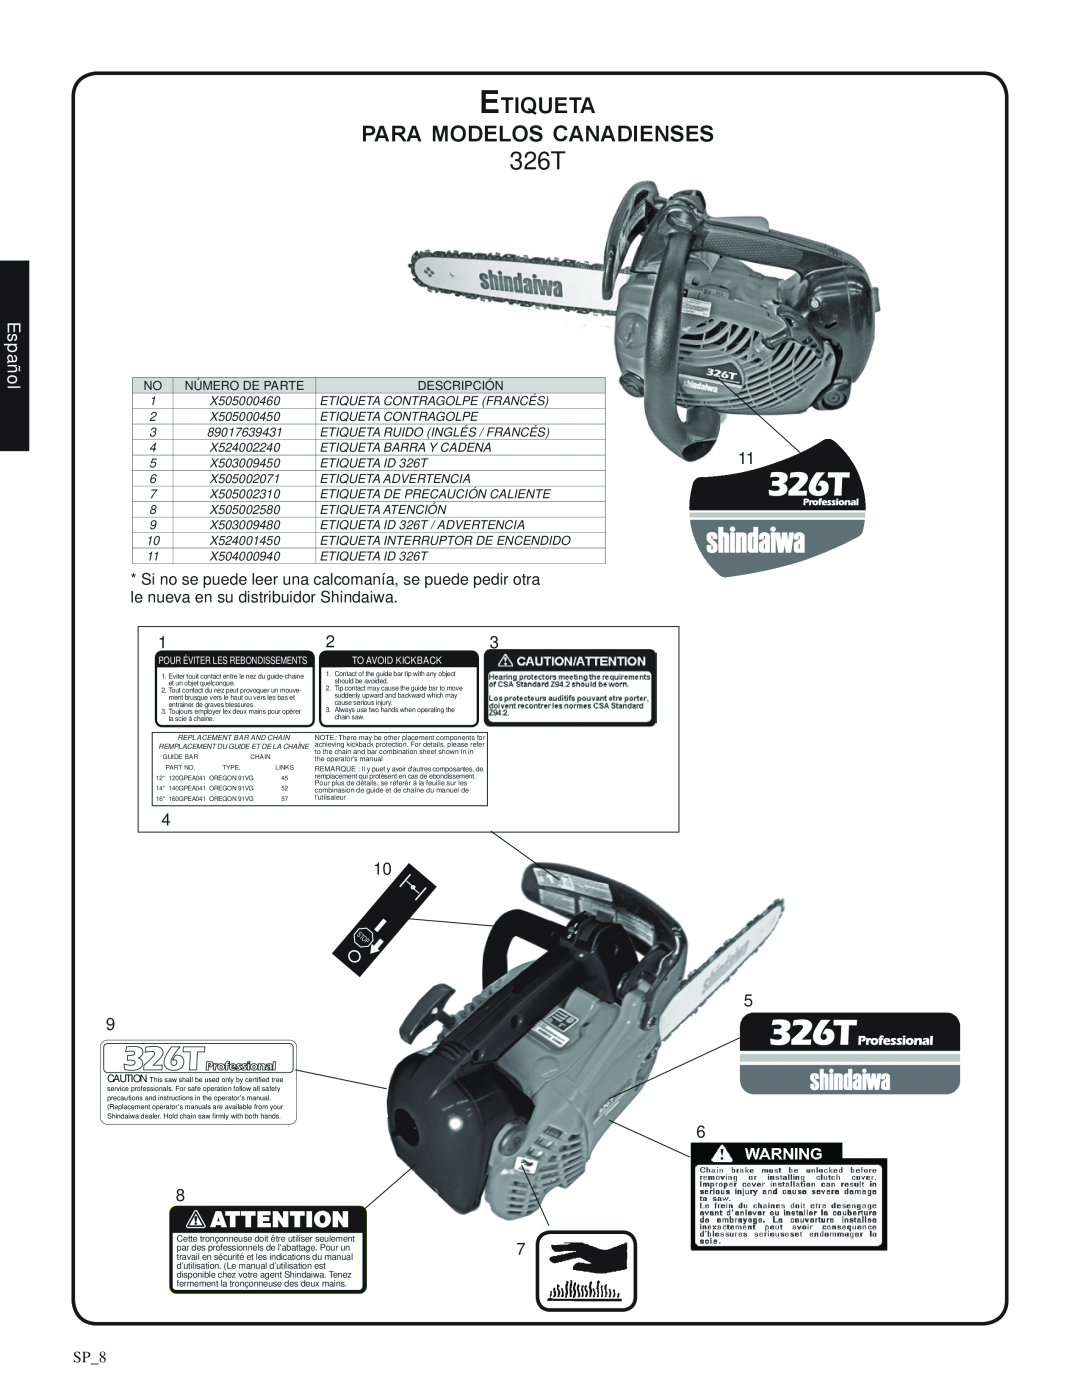 Shindaiwa 82085 manual Etiqueta para modelos canadienses, 326T, Español, SP_8, Número de parte, Descripción 